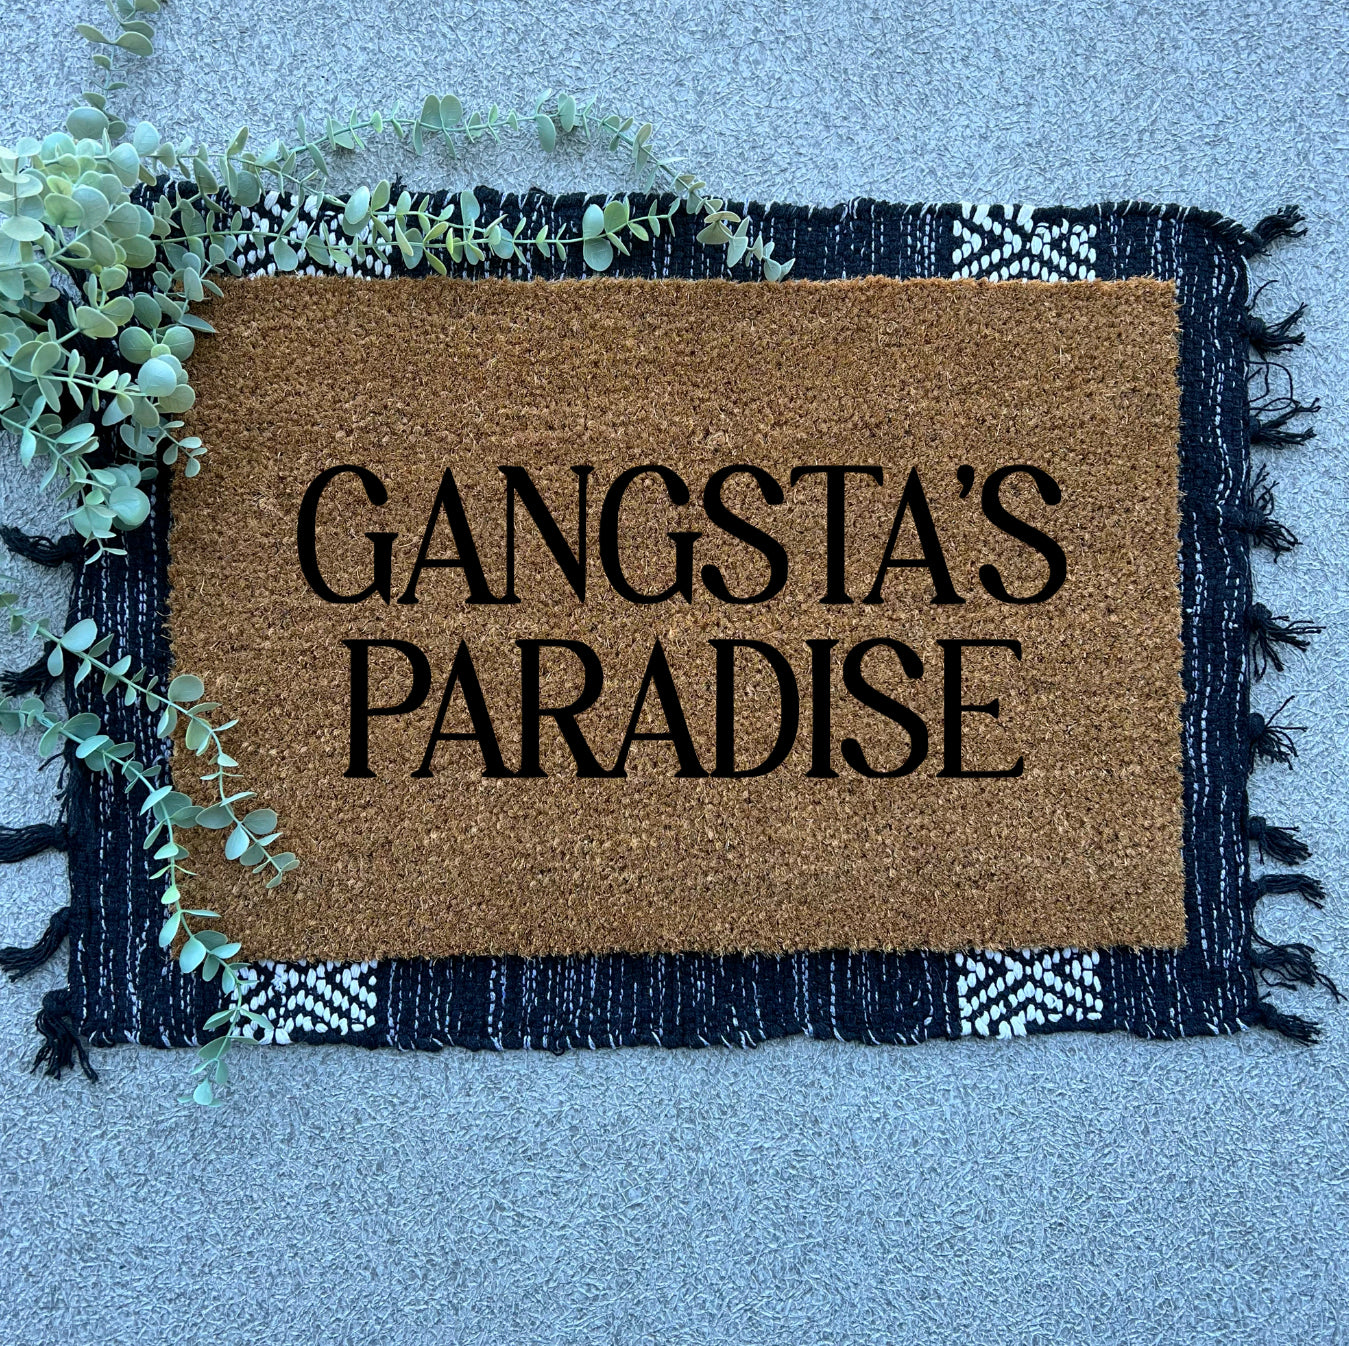 (Coolio) Gangsta’s Paradise